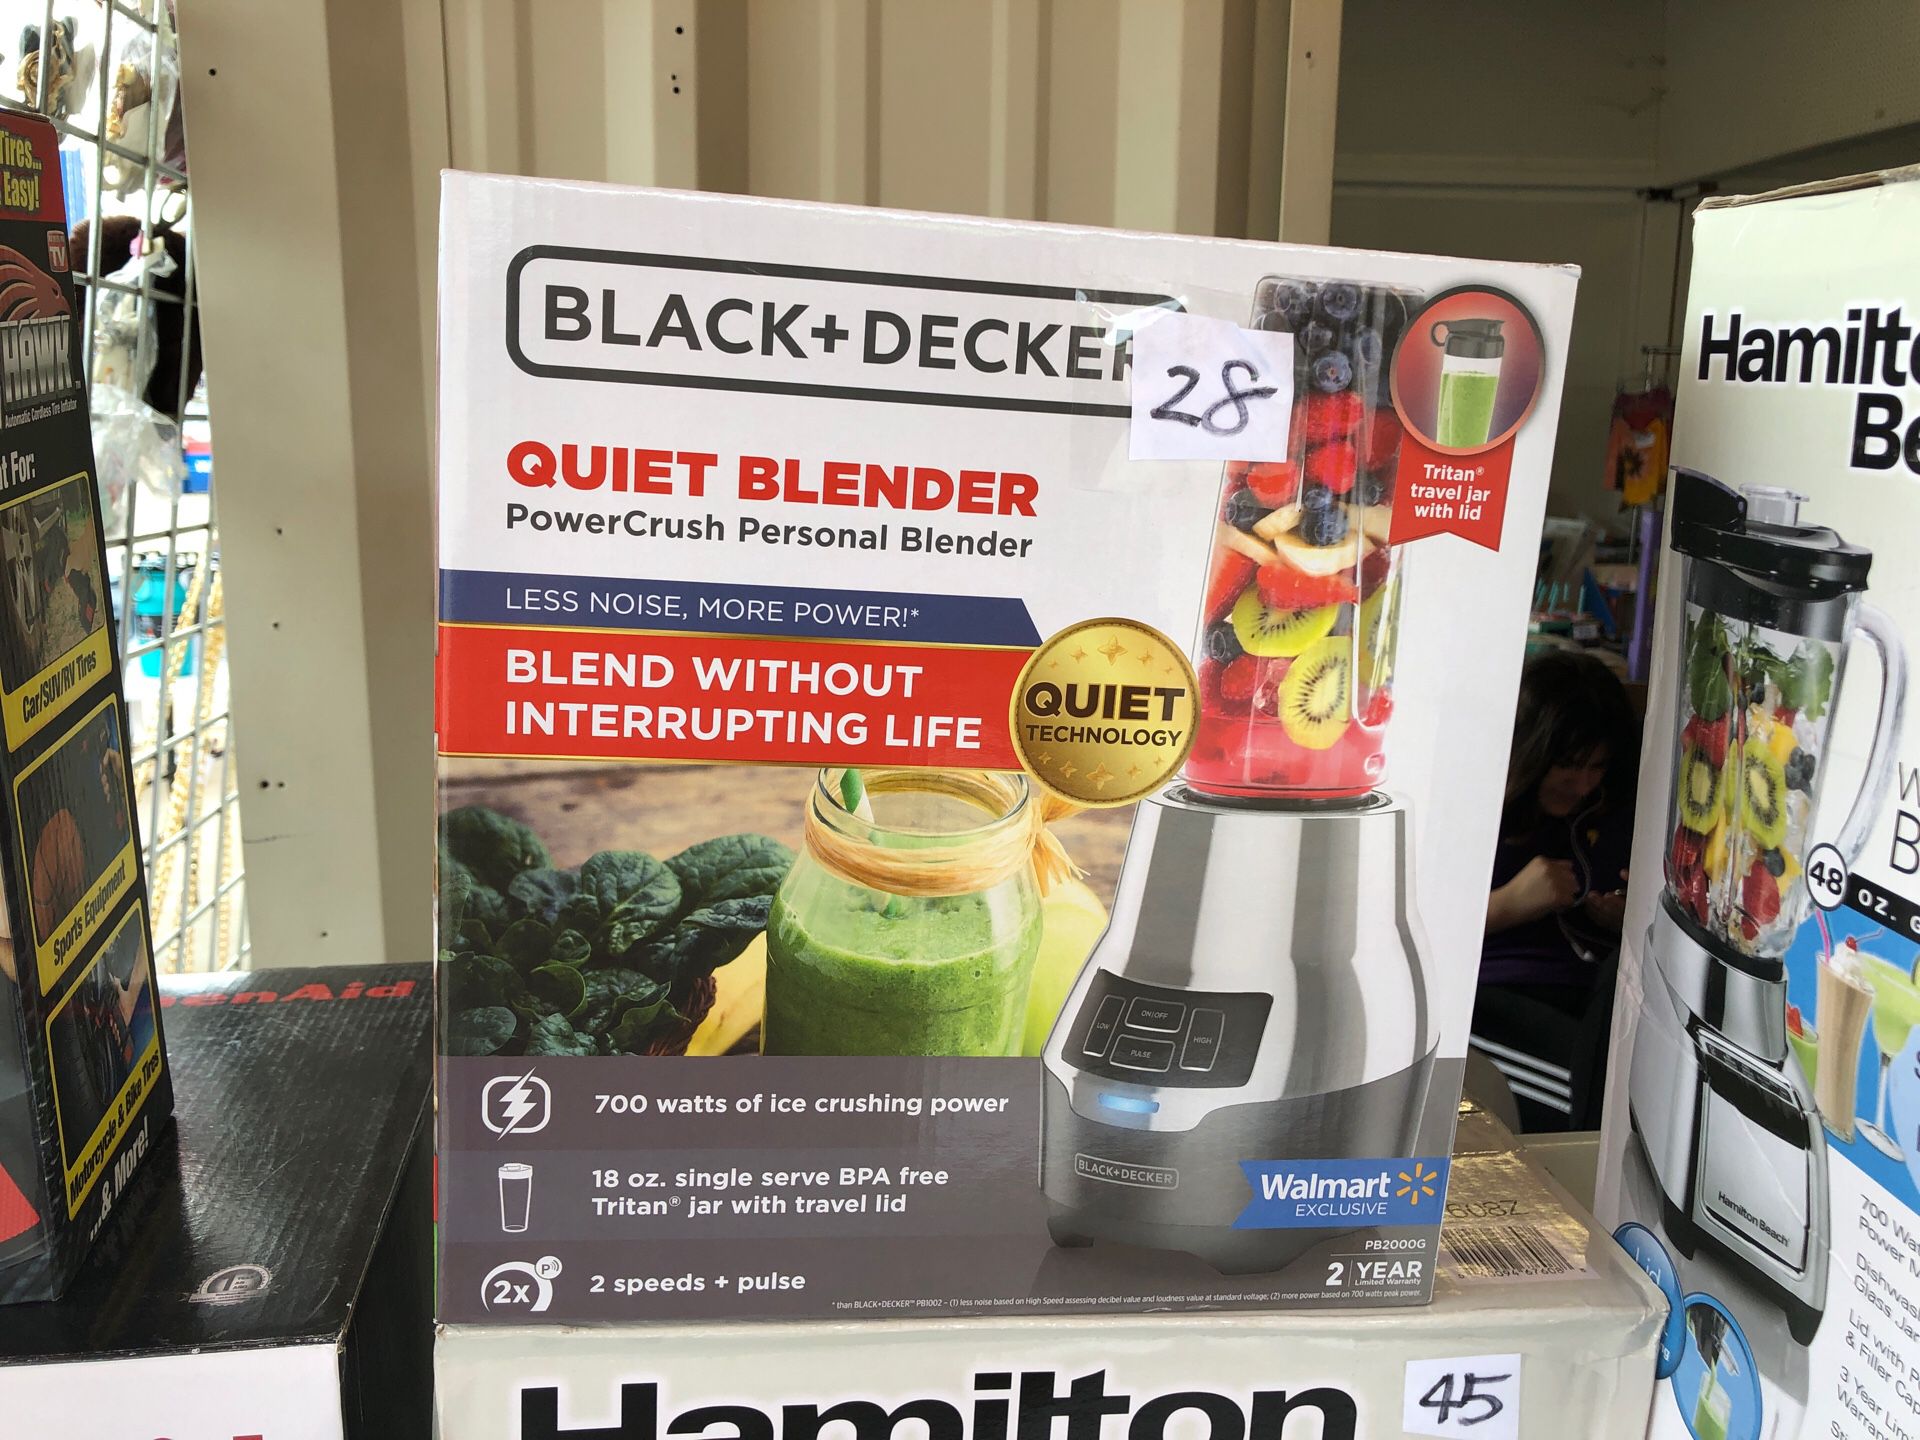 New sealed Black+ Decker quiet Blender